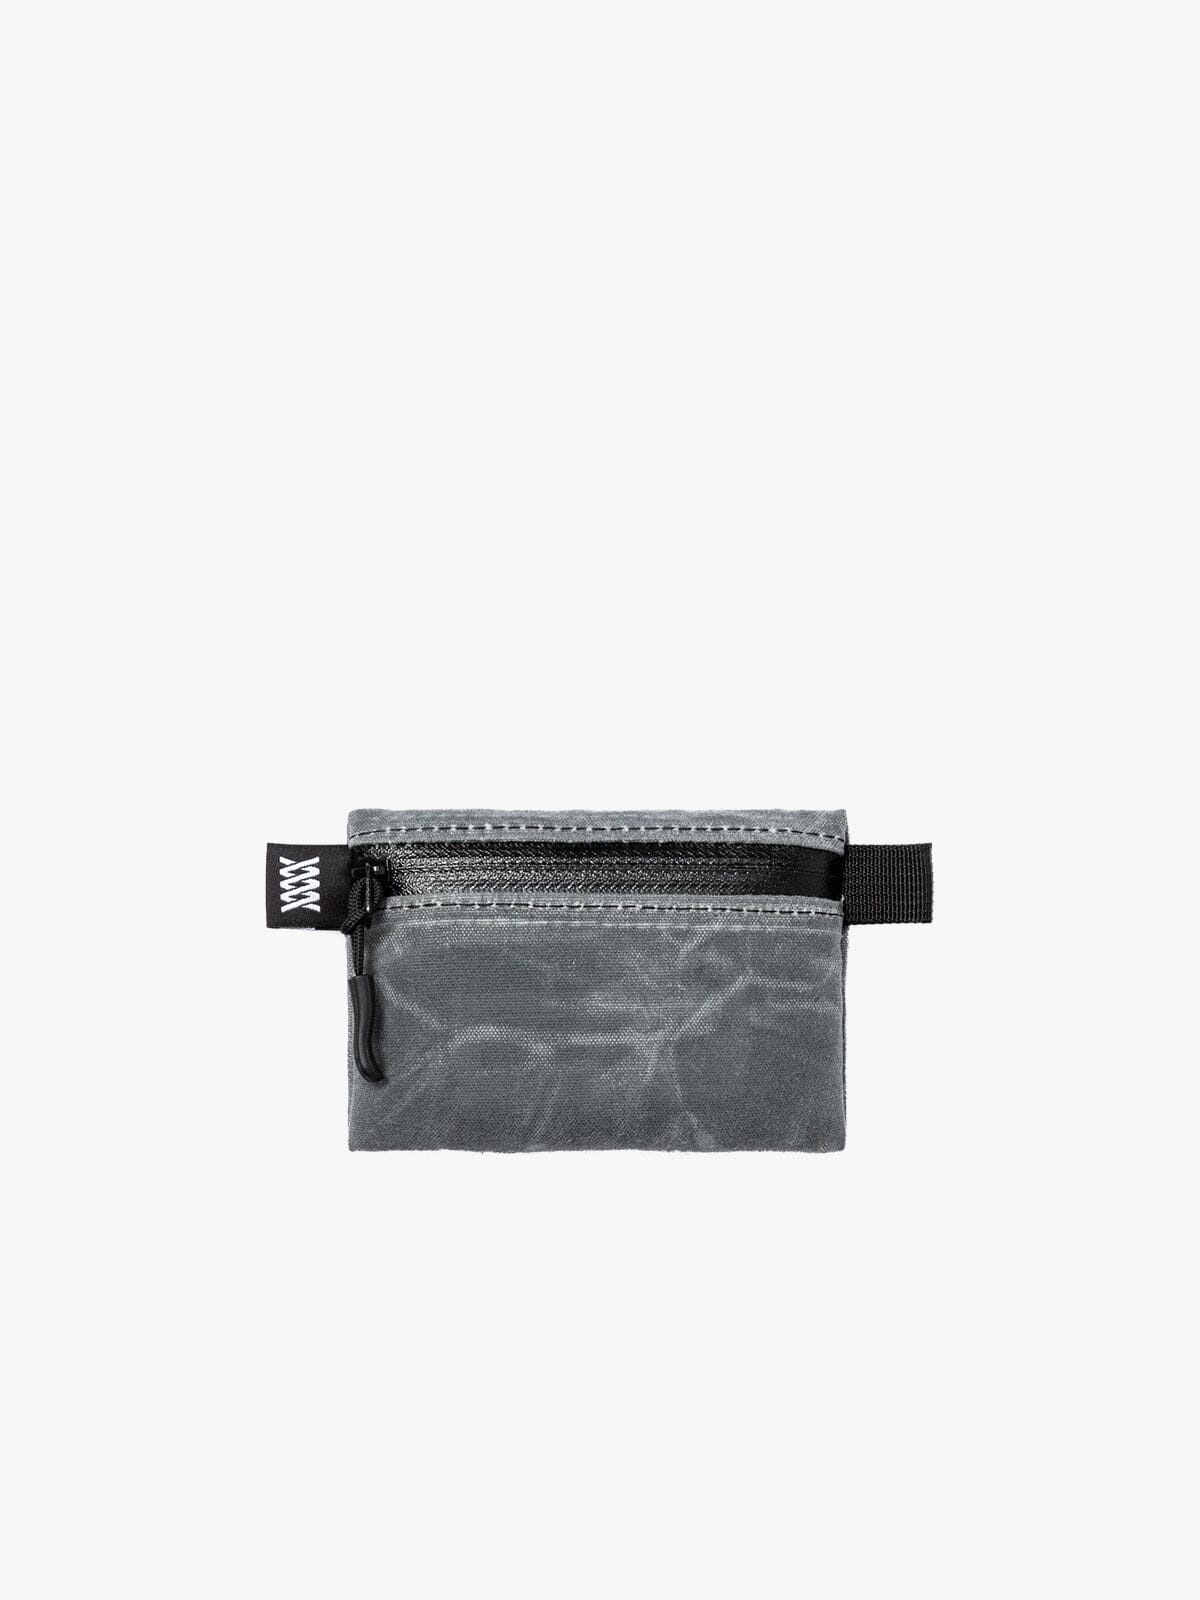 Waxed Canvas Wallet & Utility Pouch by Mission Workshop - Weatherproof Bags & Technical Apparel - San Francisco & Los Angeles - Construit pour durer - Garanti pour toujours